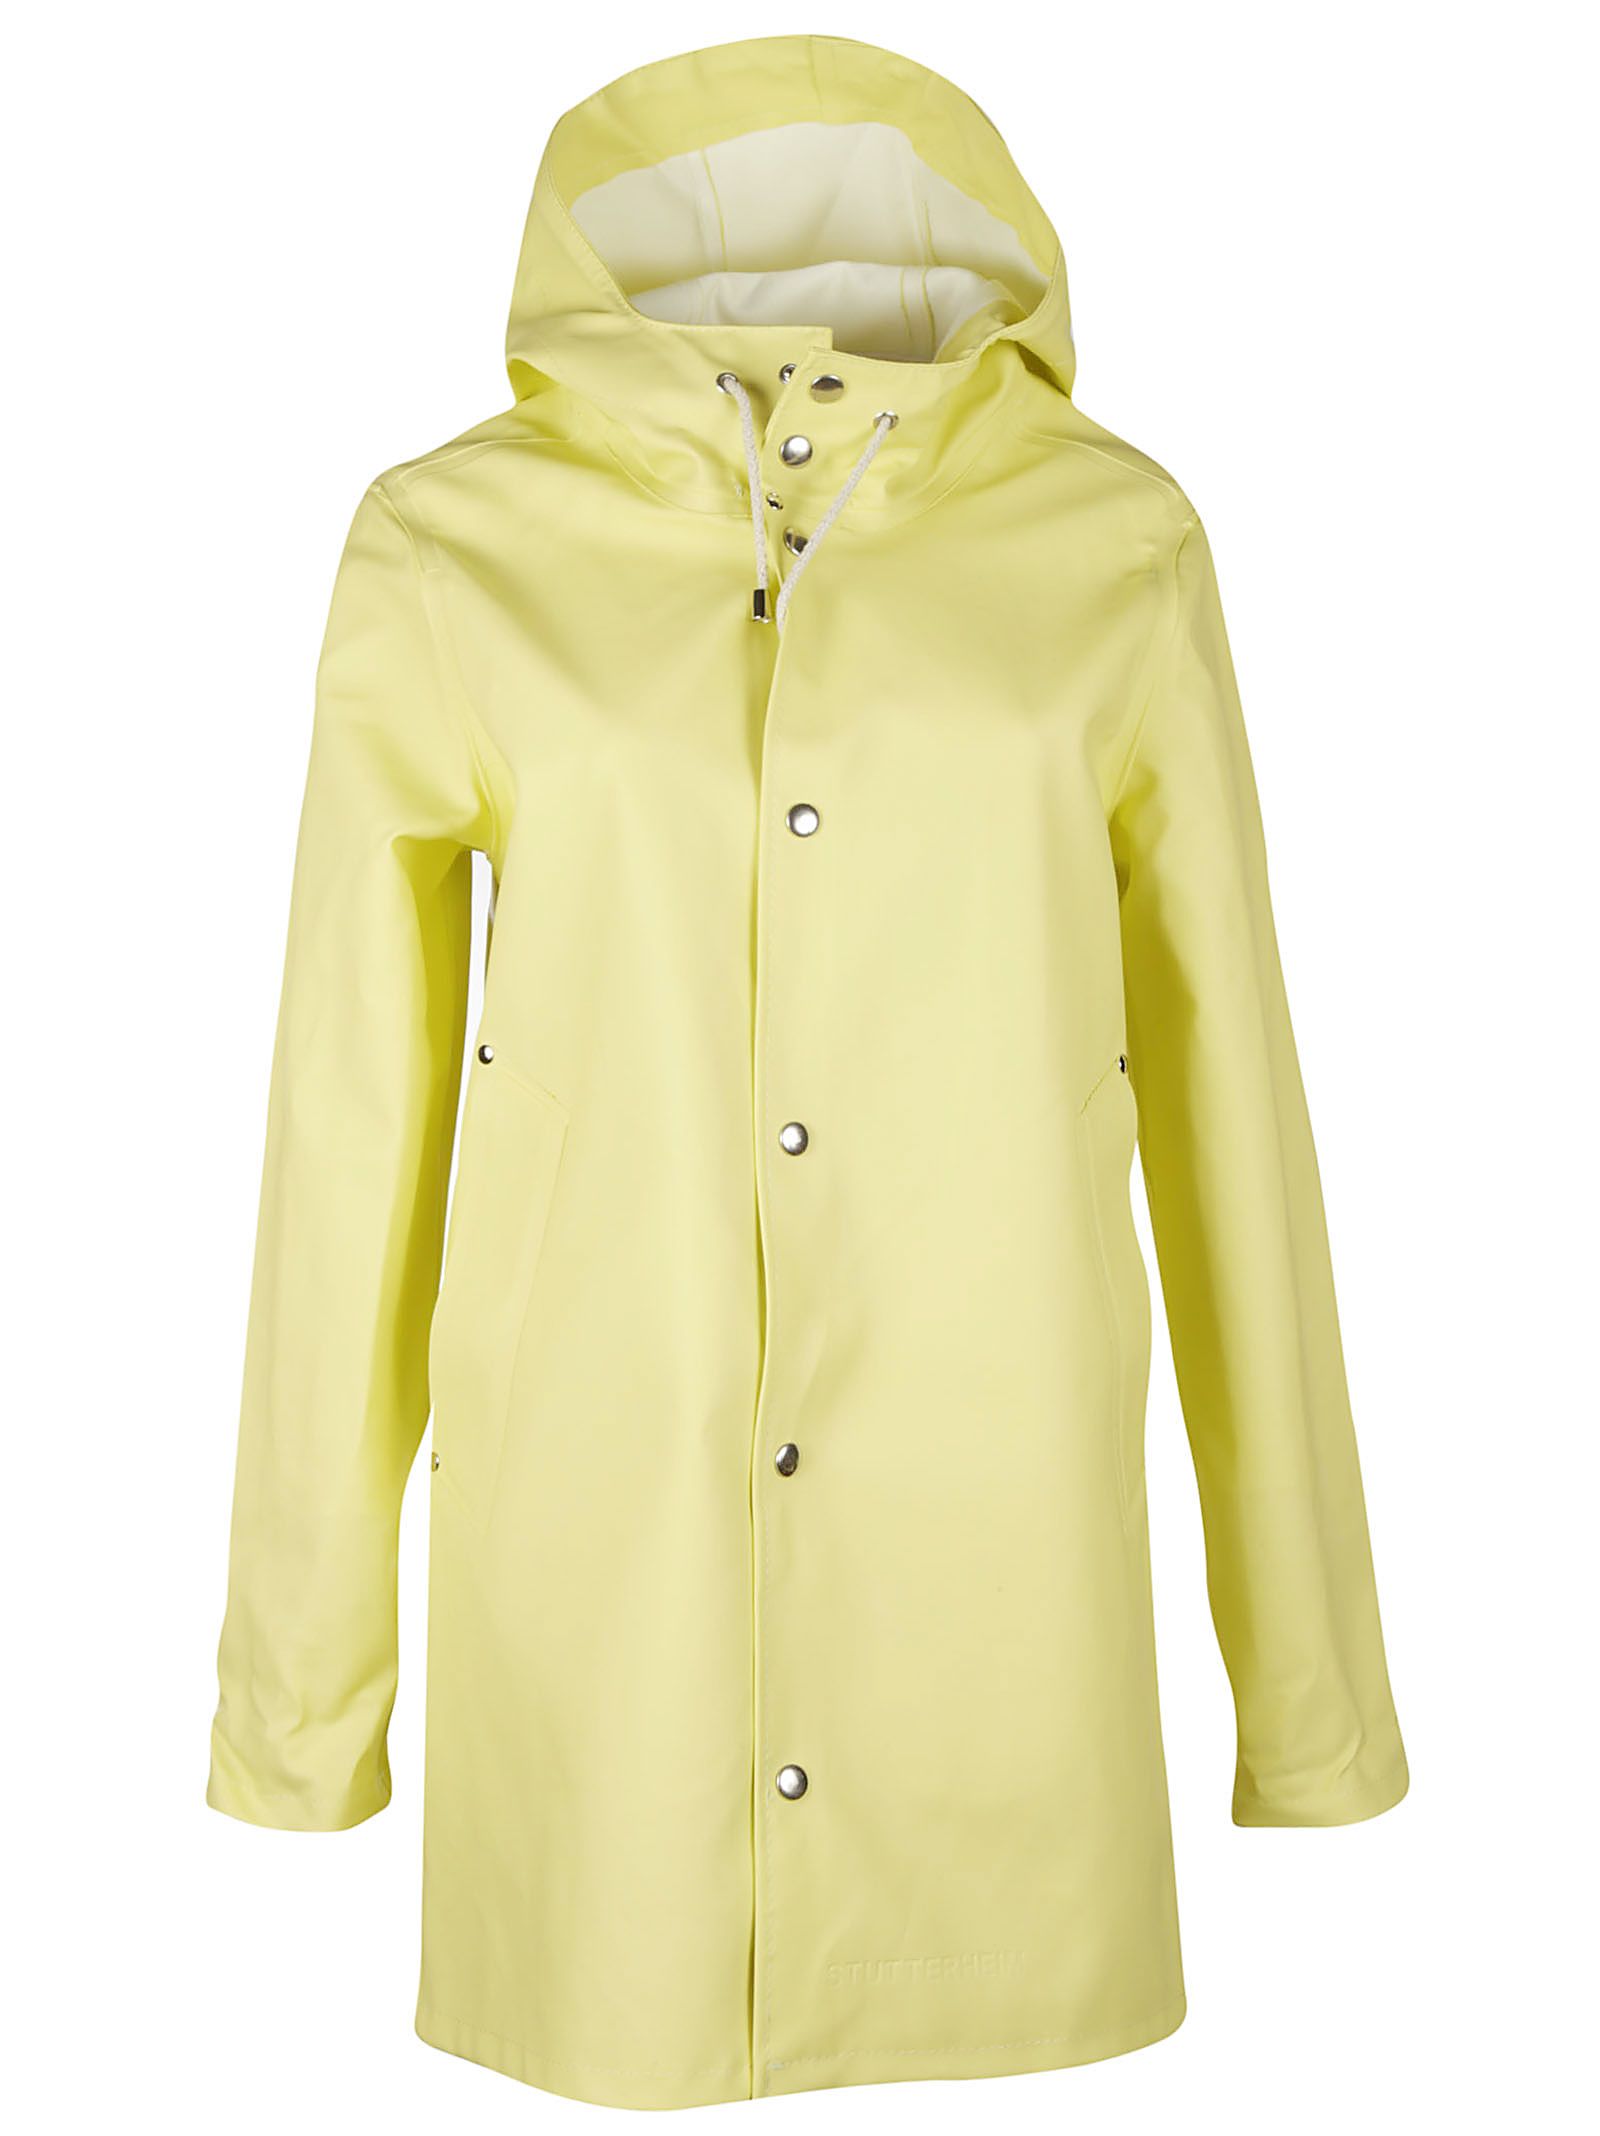 Stutterheim - Stutterheim Stockholm Raincoat - Yellow, Women's ...